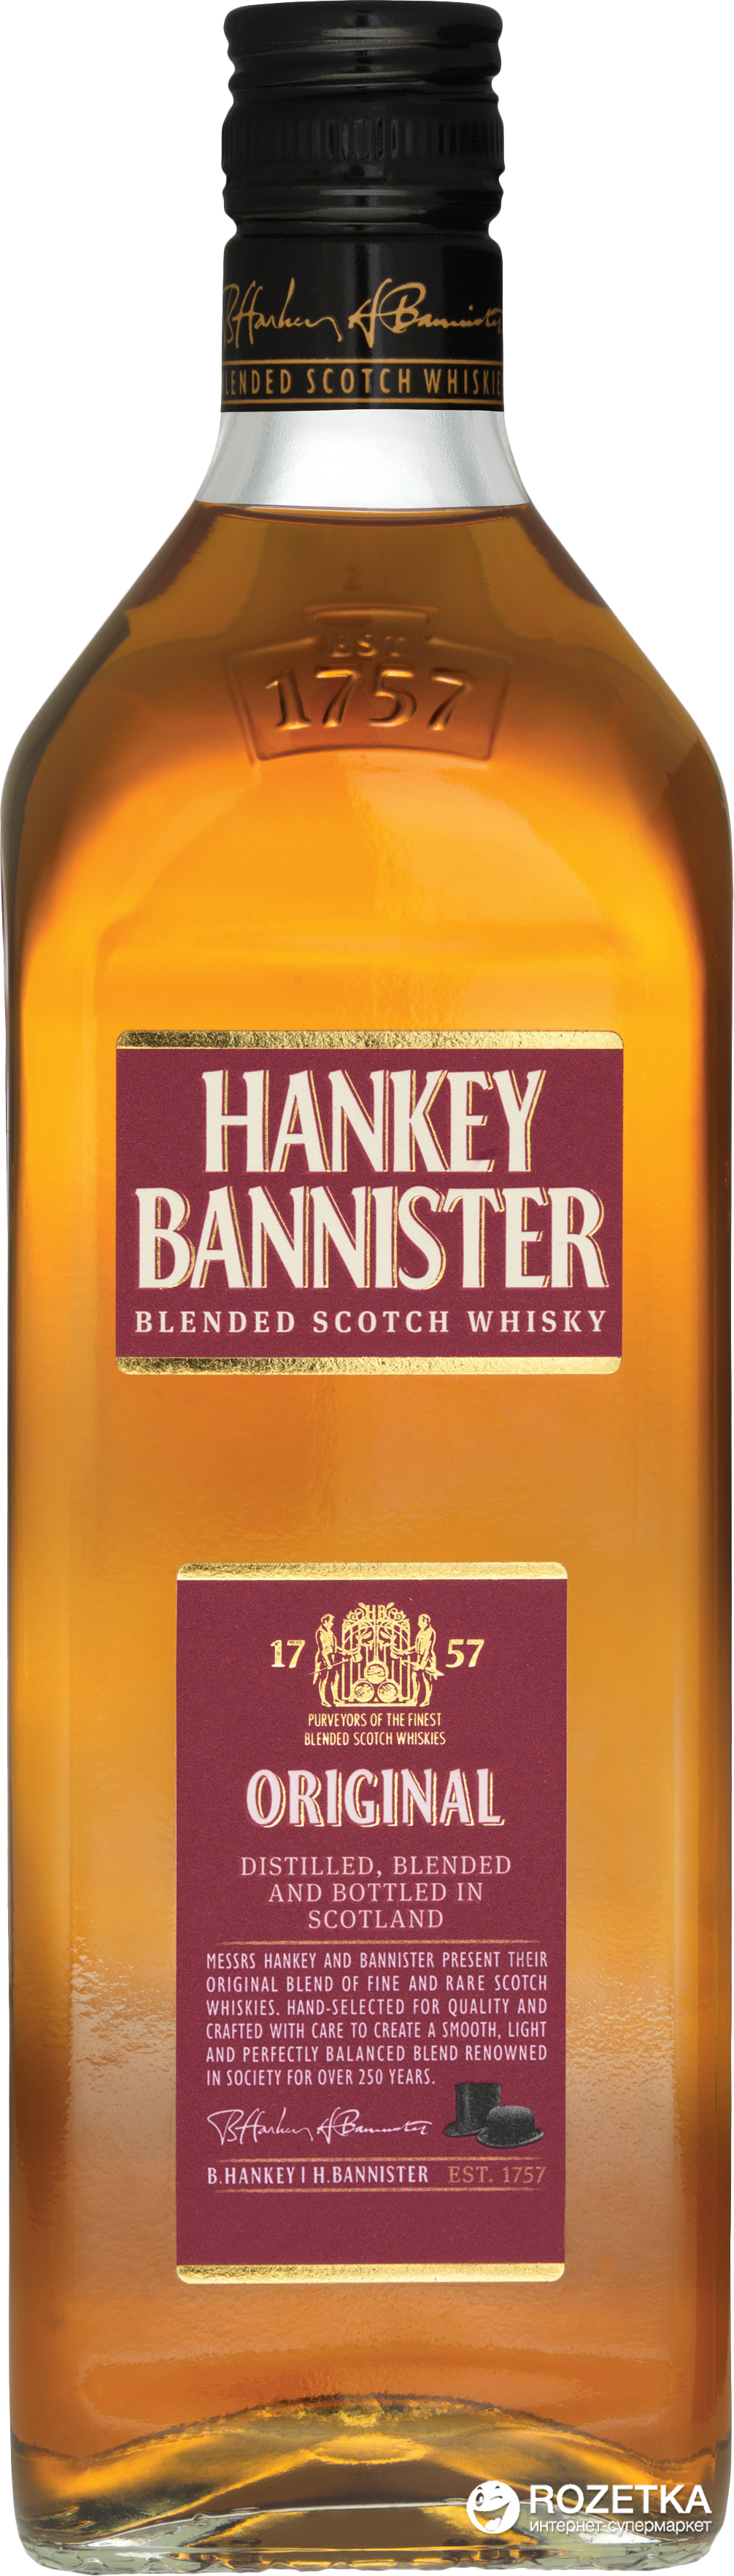 Акция на Виски Hankey Bannister Original 3 года выдержки 0.7 л 40% (5010509001243_5010509001229) от Rozetka UA